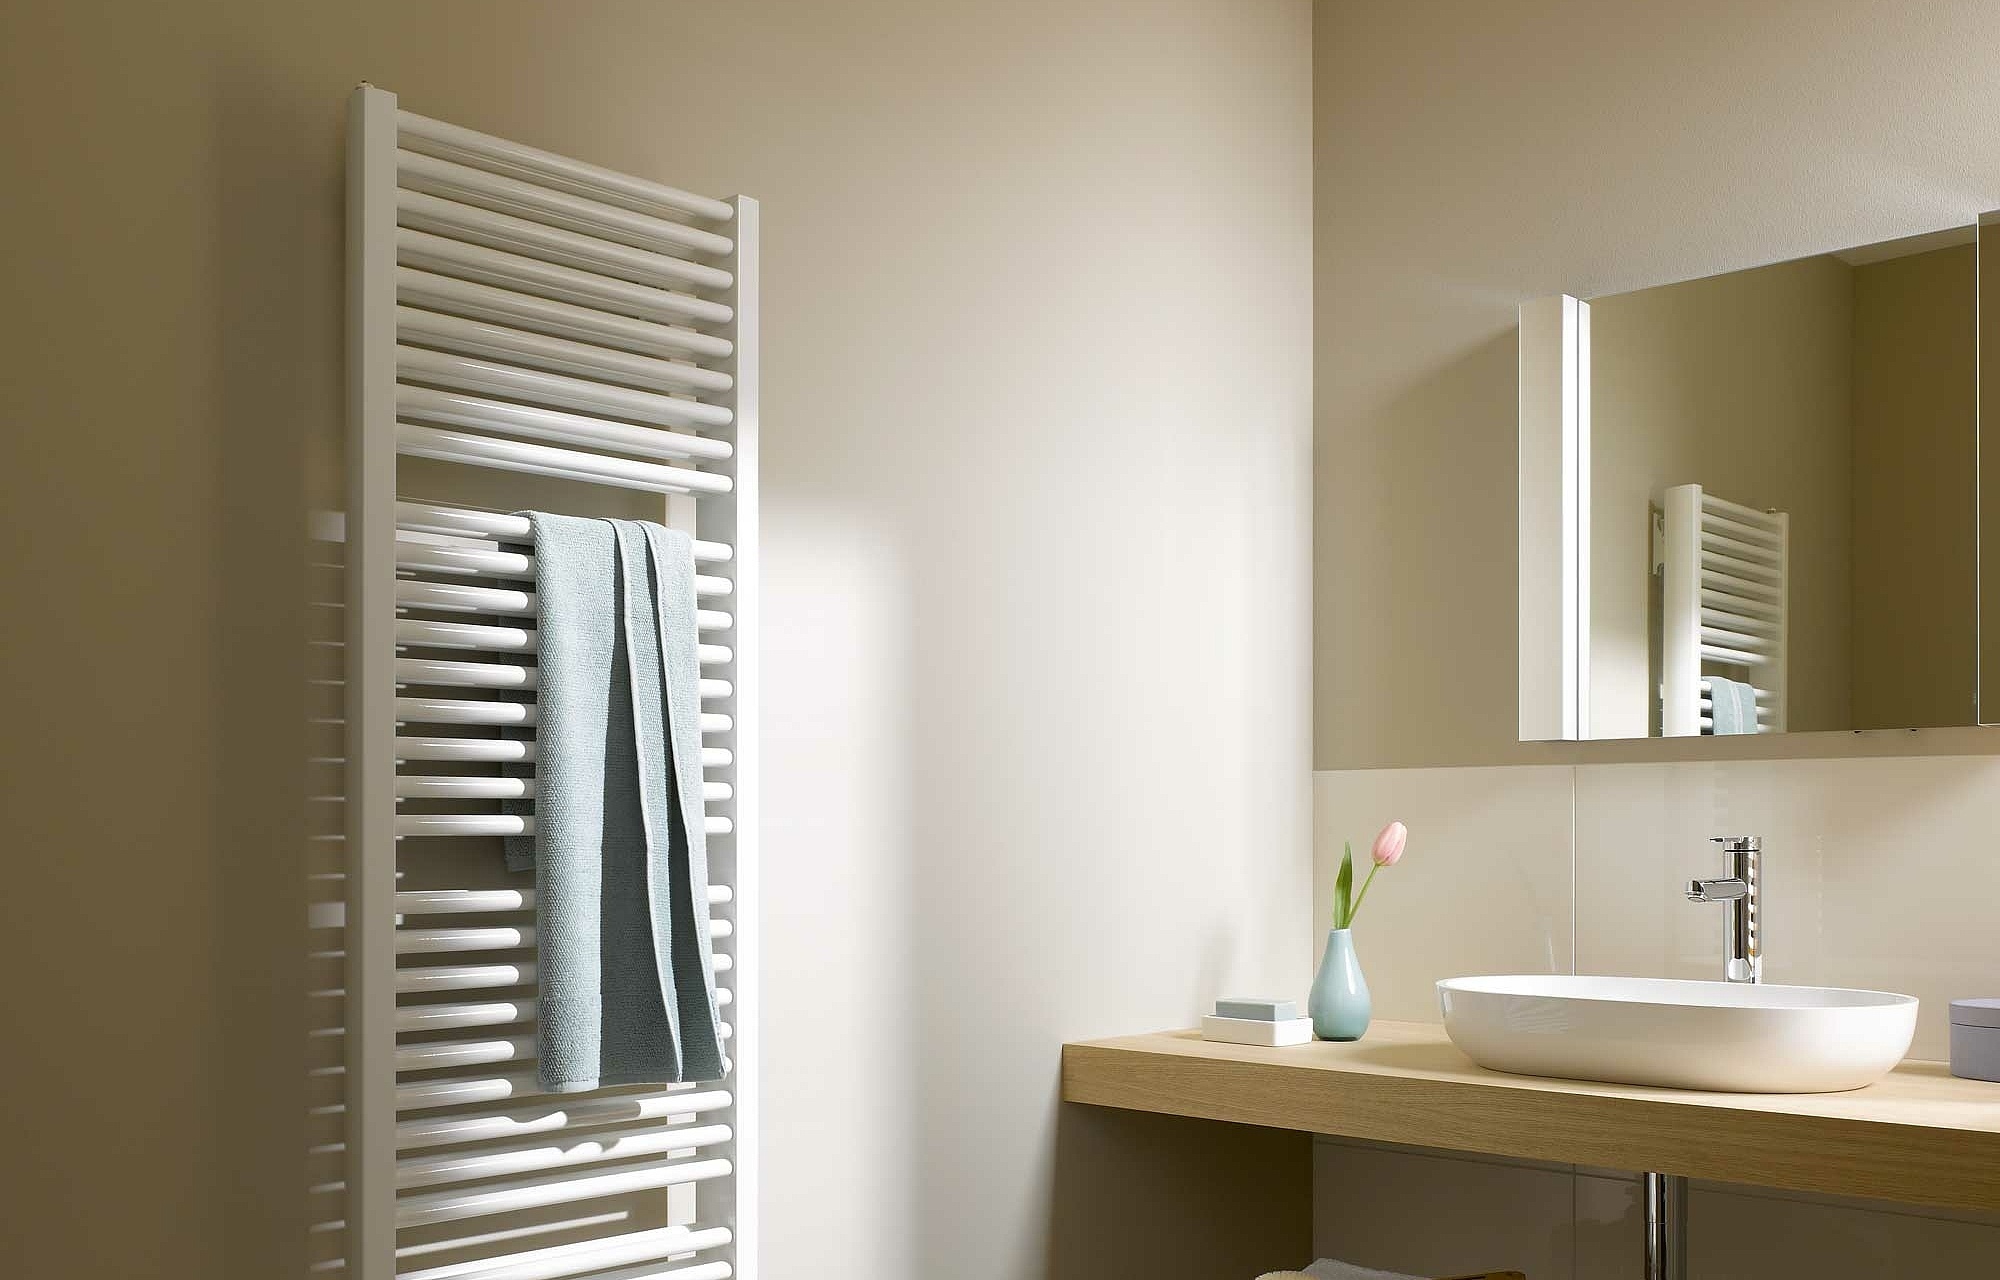 Il radiatore da bagno e di design Kermi Duett offre un'ampia gamma di dimensioni e numerose opzioni cromatiche.